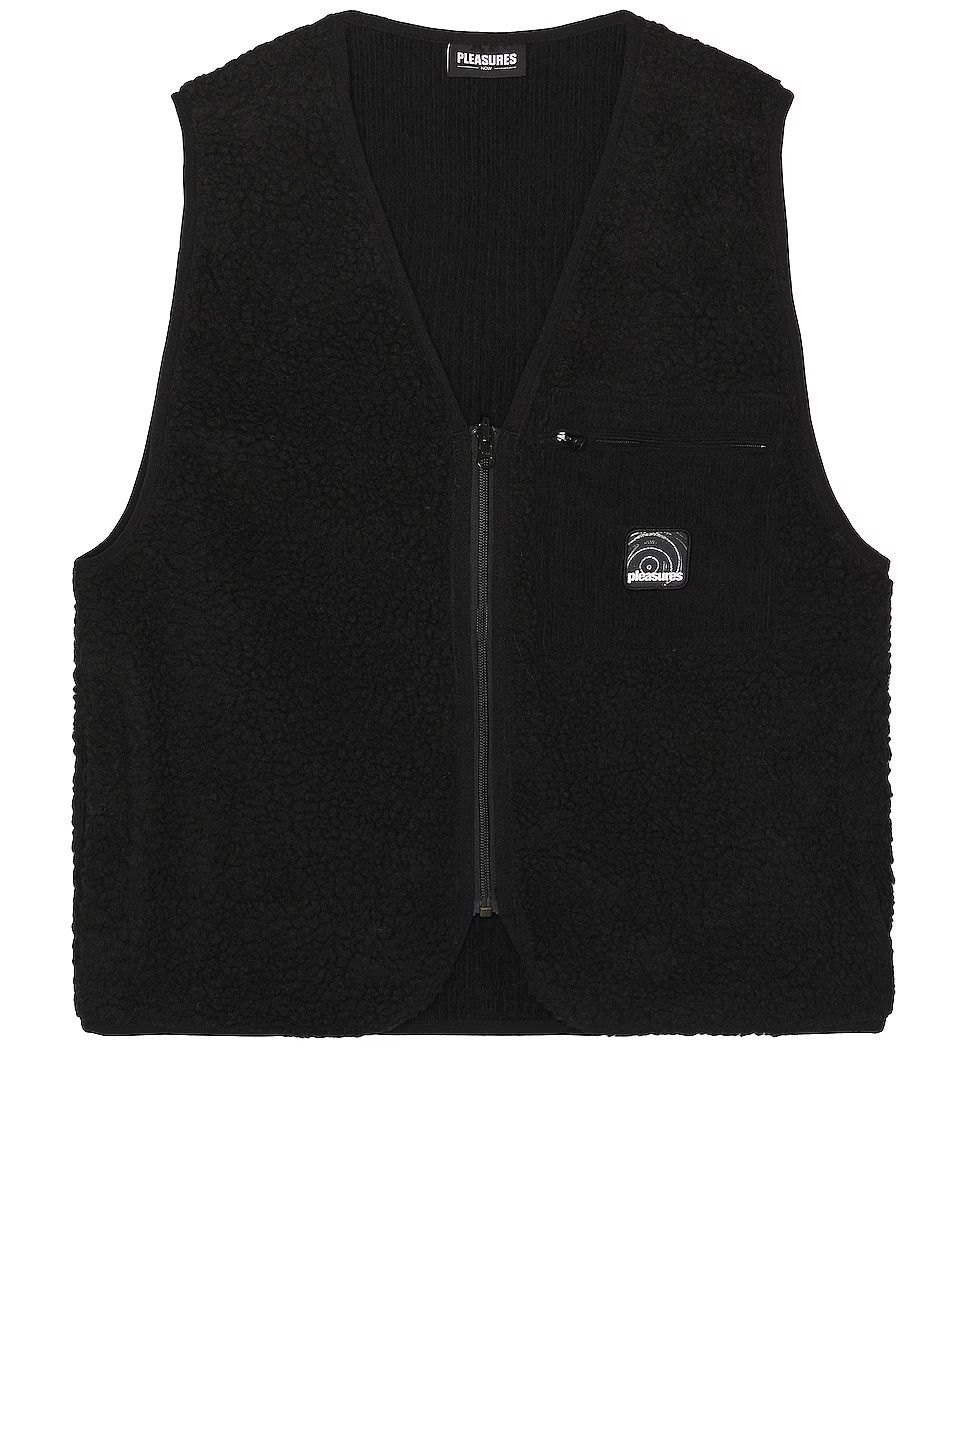 Pleasures Infinite Sherpa Fleece Reversible Vest | Grailed